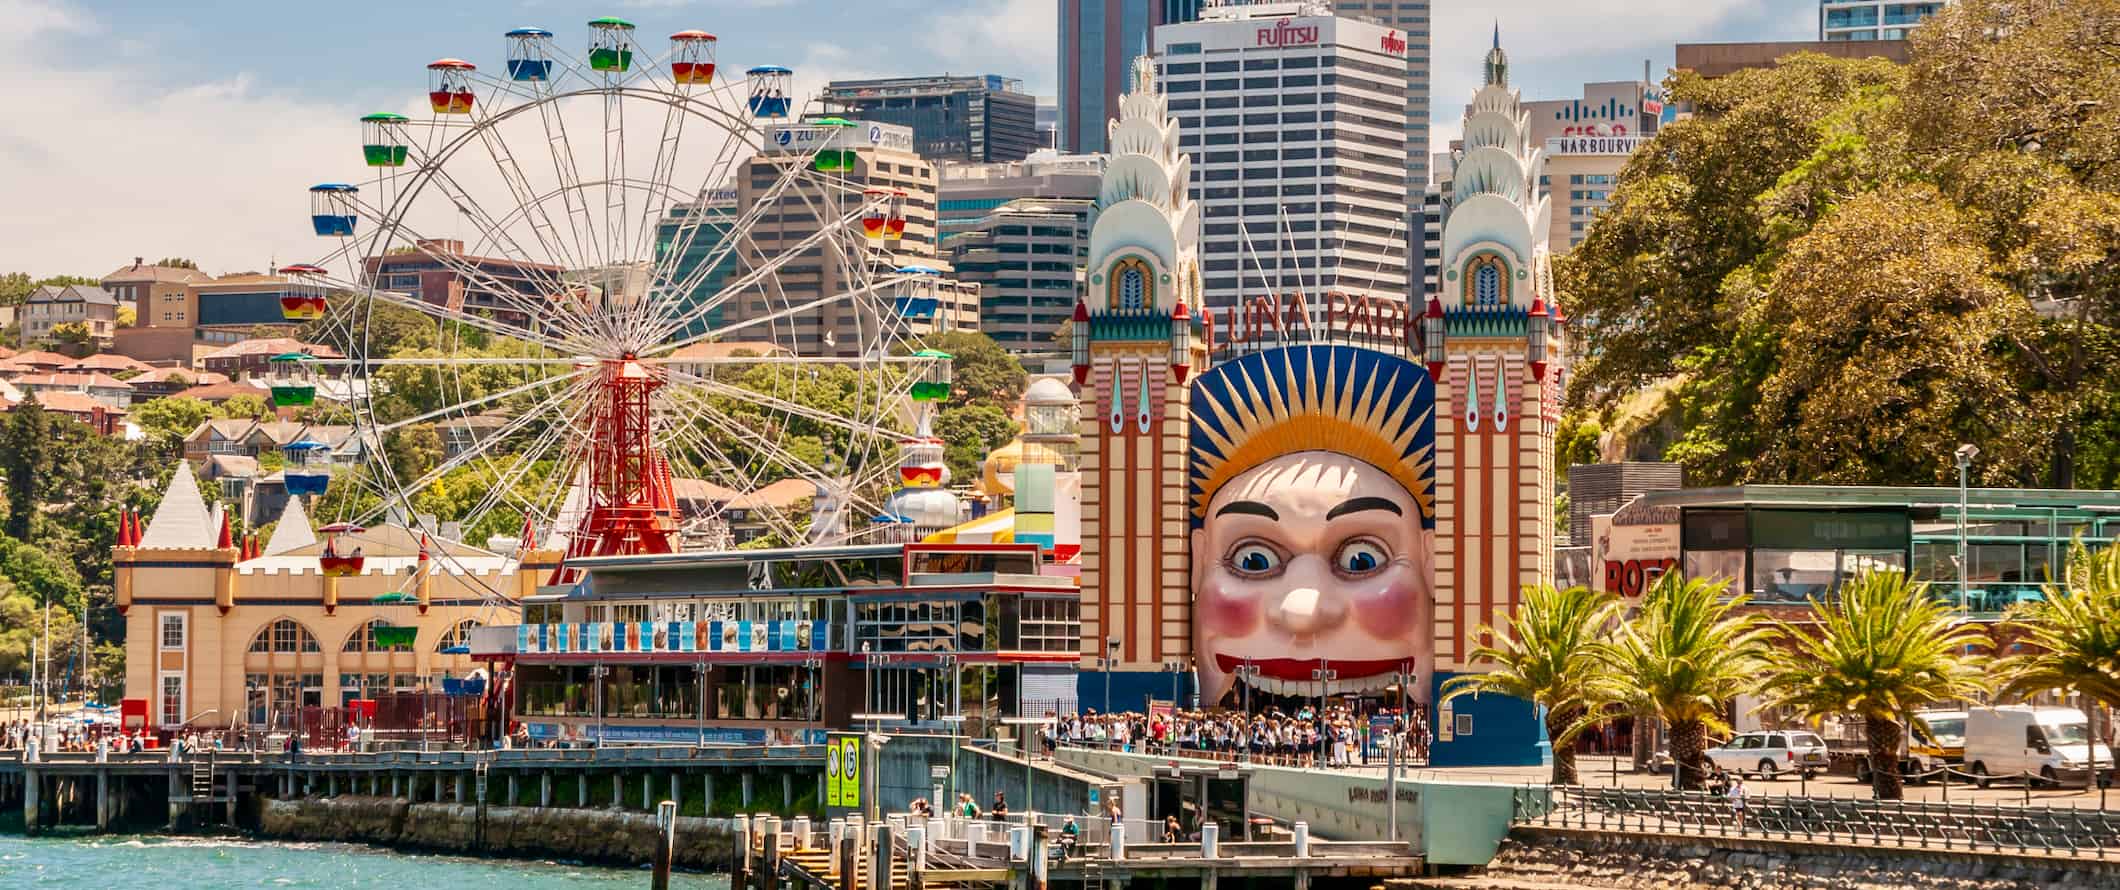 Carnival rides along the coast of sunny Sydney, Australia